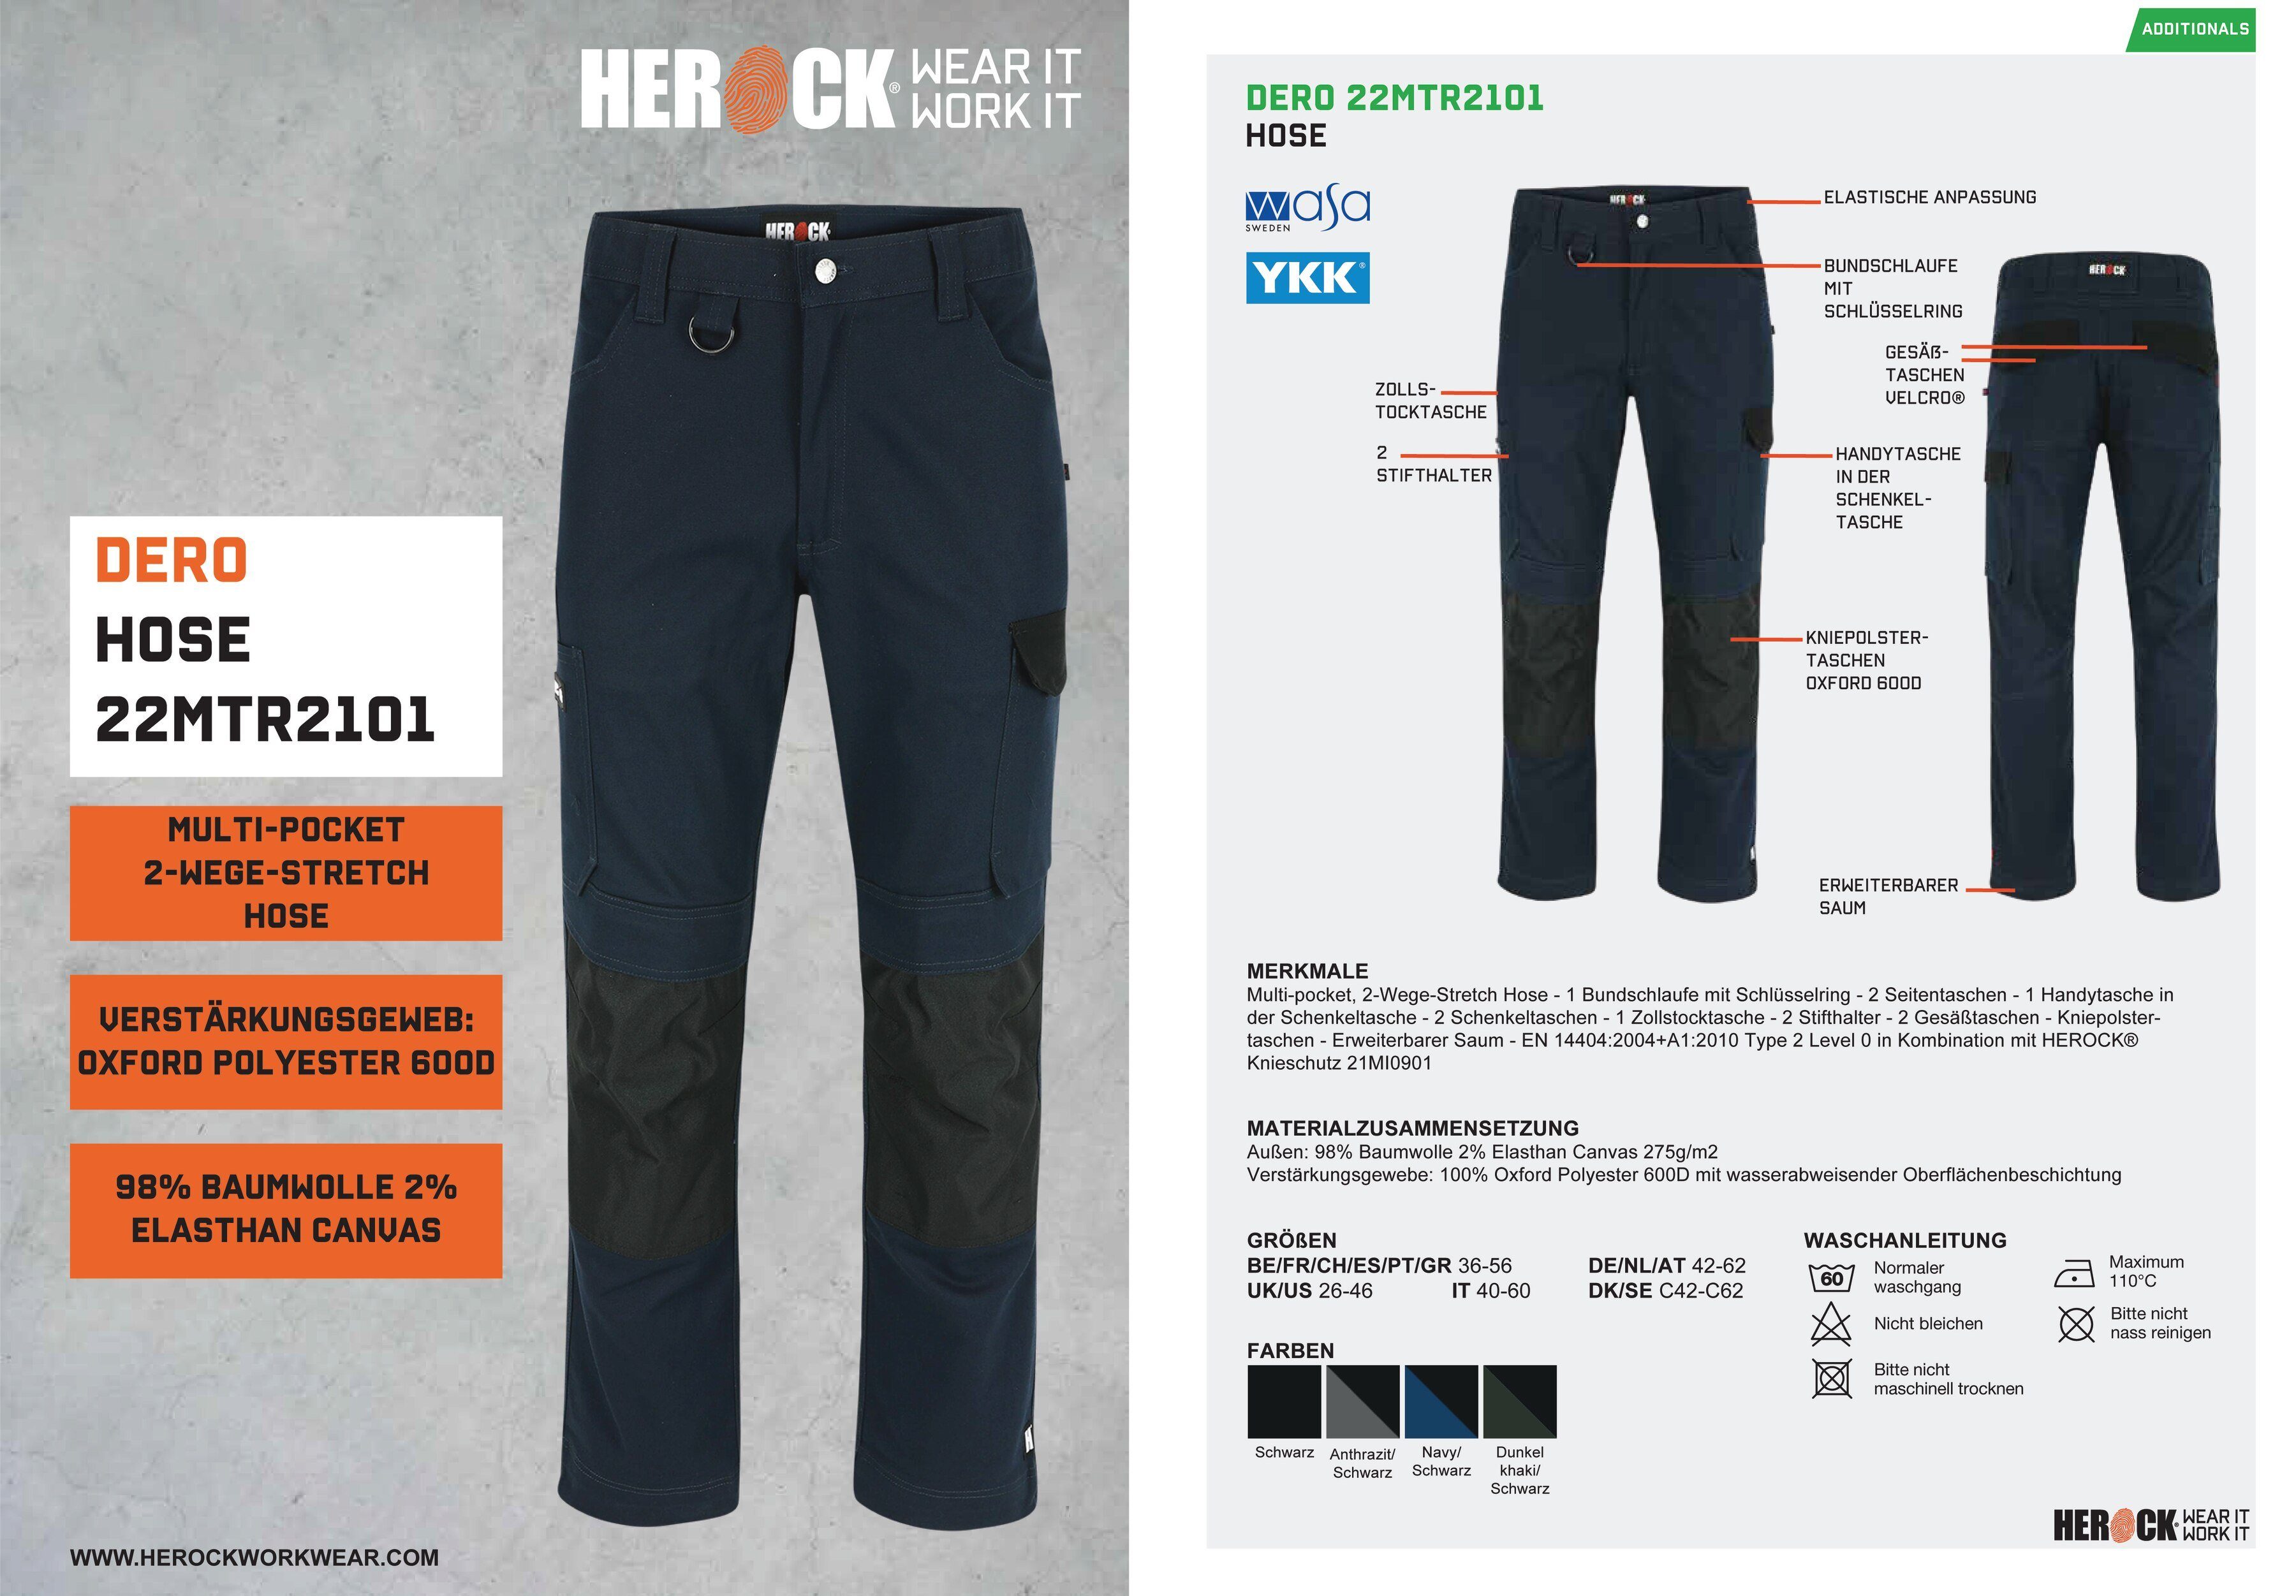 Herock Arbeitshose Slim 2-Wege-Stretch, Multi-Pocket, DERO marine Fit wasserabweisend Passform